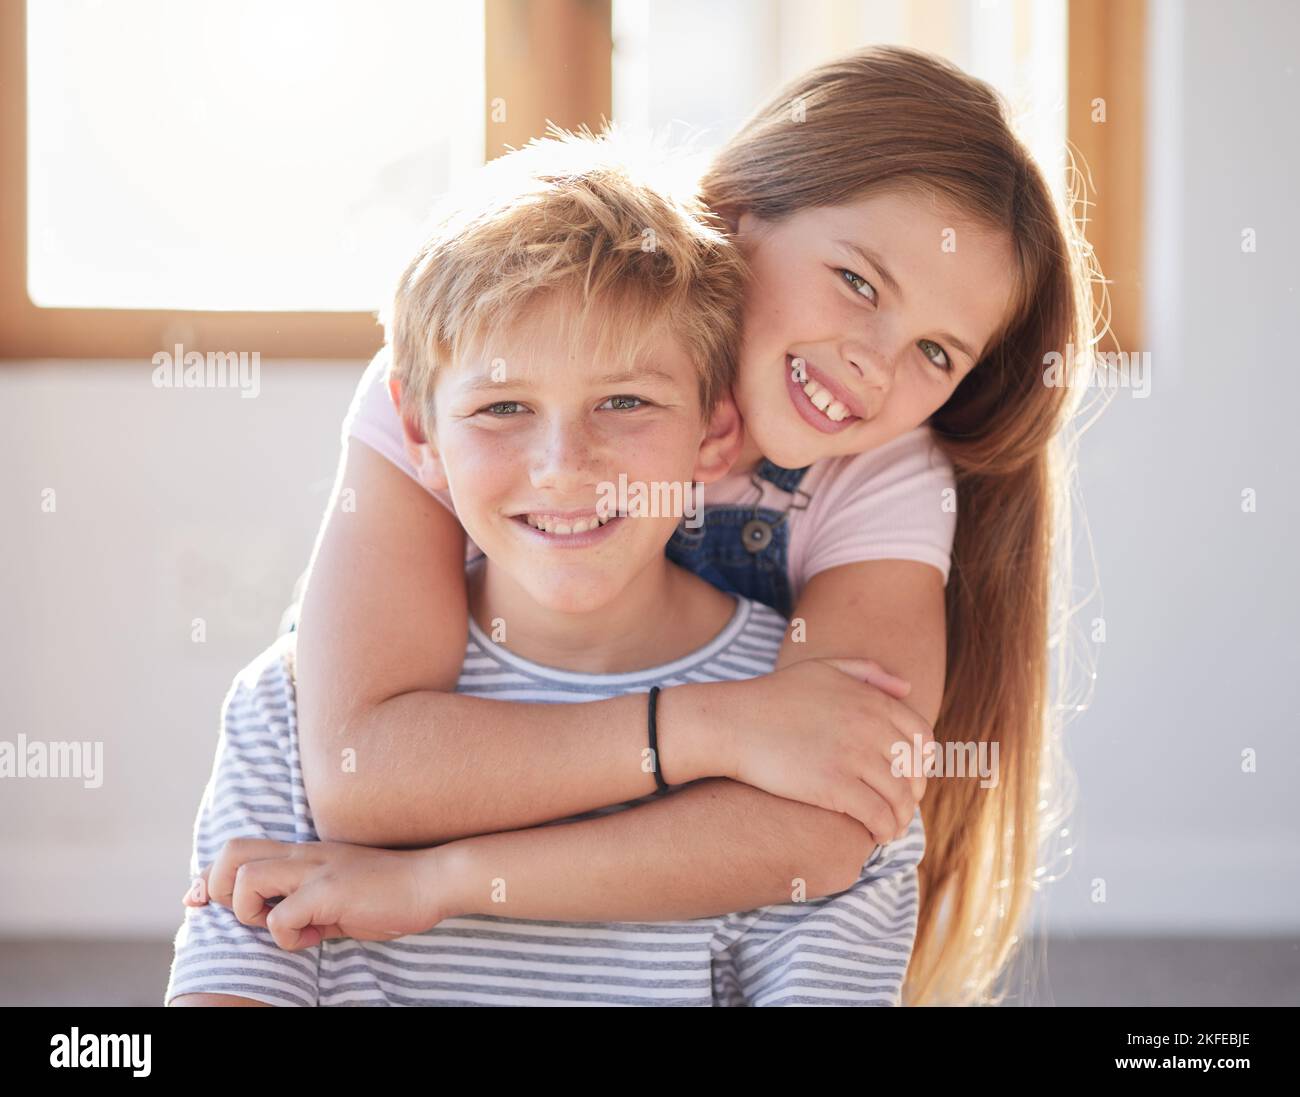 Familie, Umarmung und Porträt von Mädchen und Jungen in einem Wohnzimmer, Kleben und glücklich, während die Zeit miteinander genießen. Gesicht, glückliche Familie und Geschwister Stockfoto